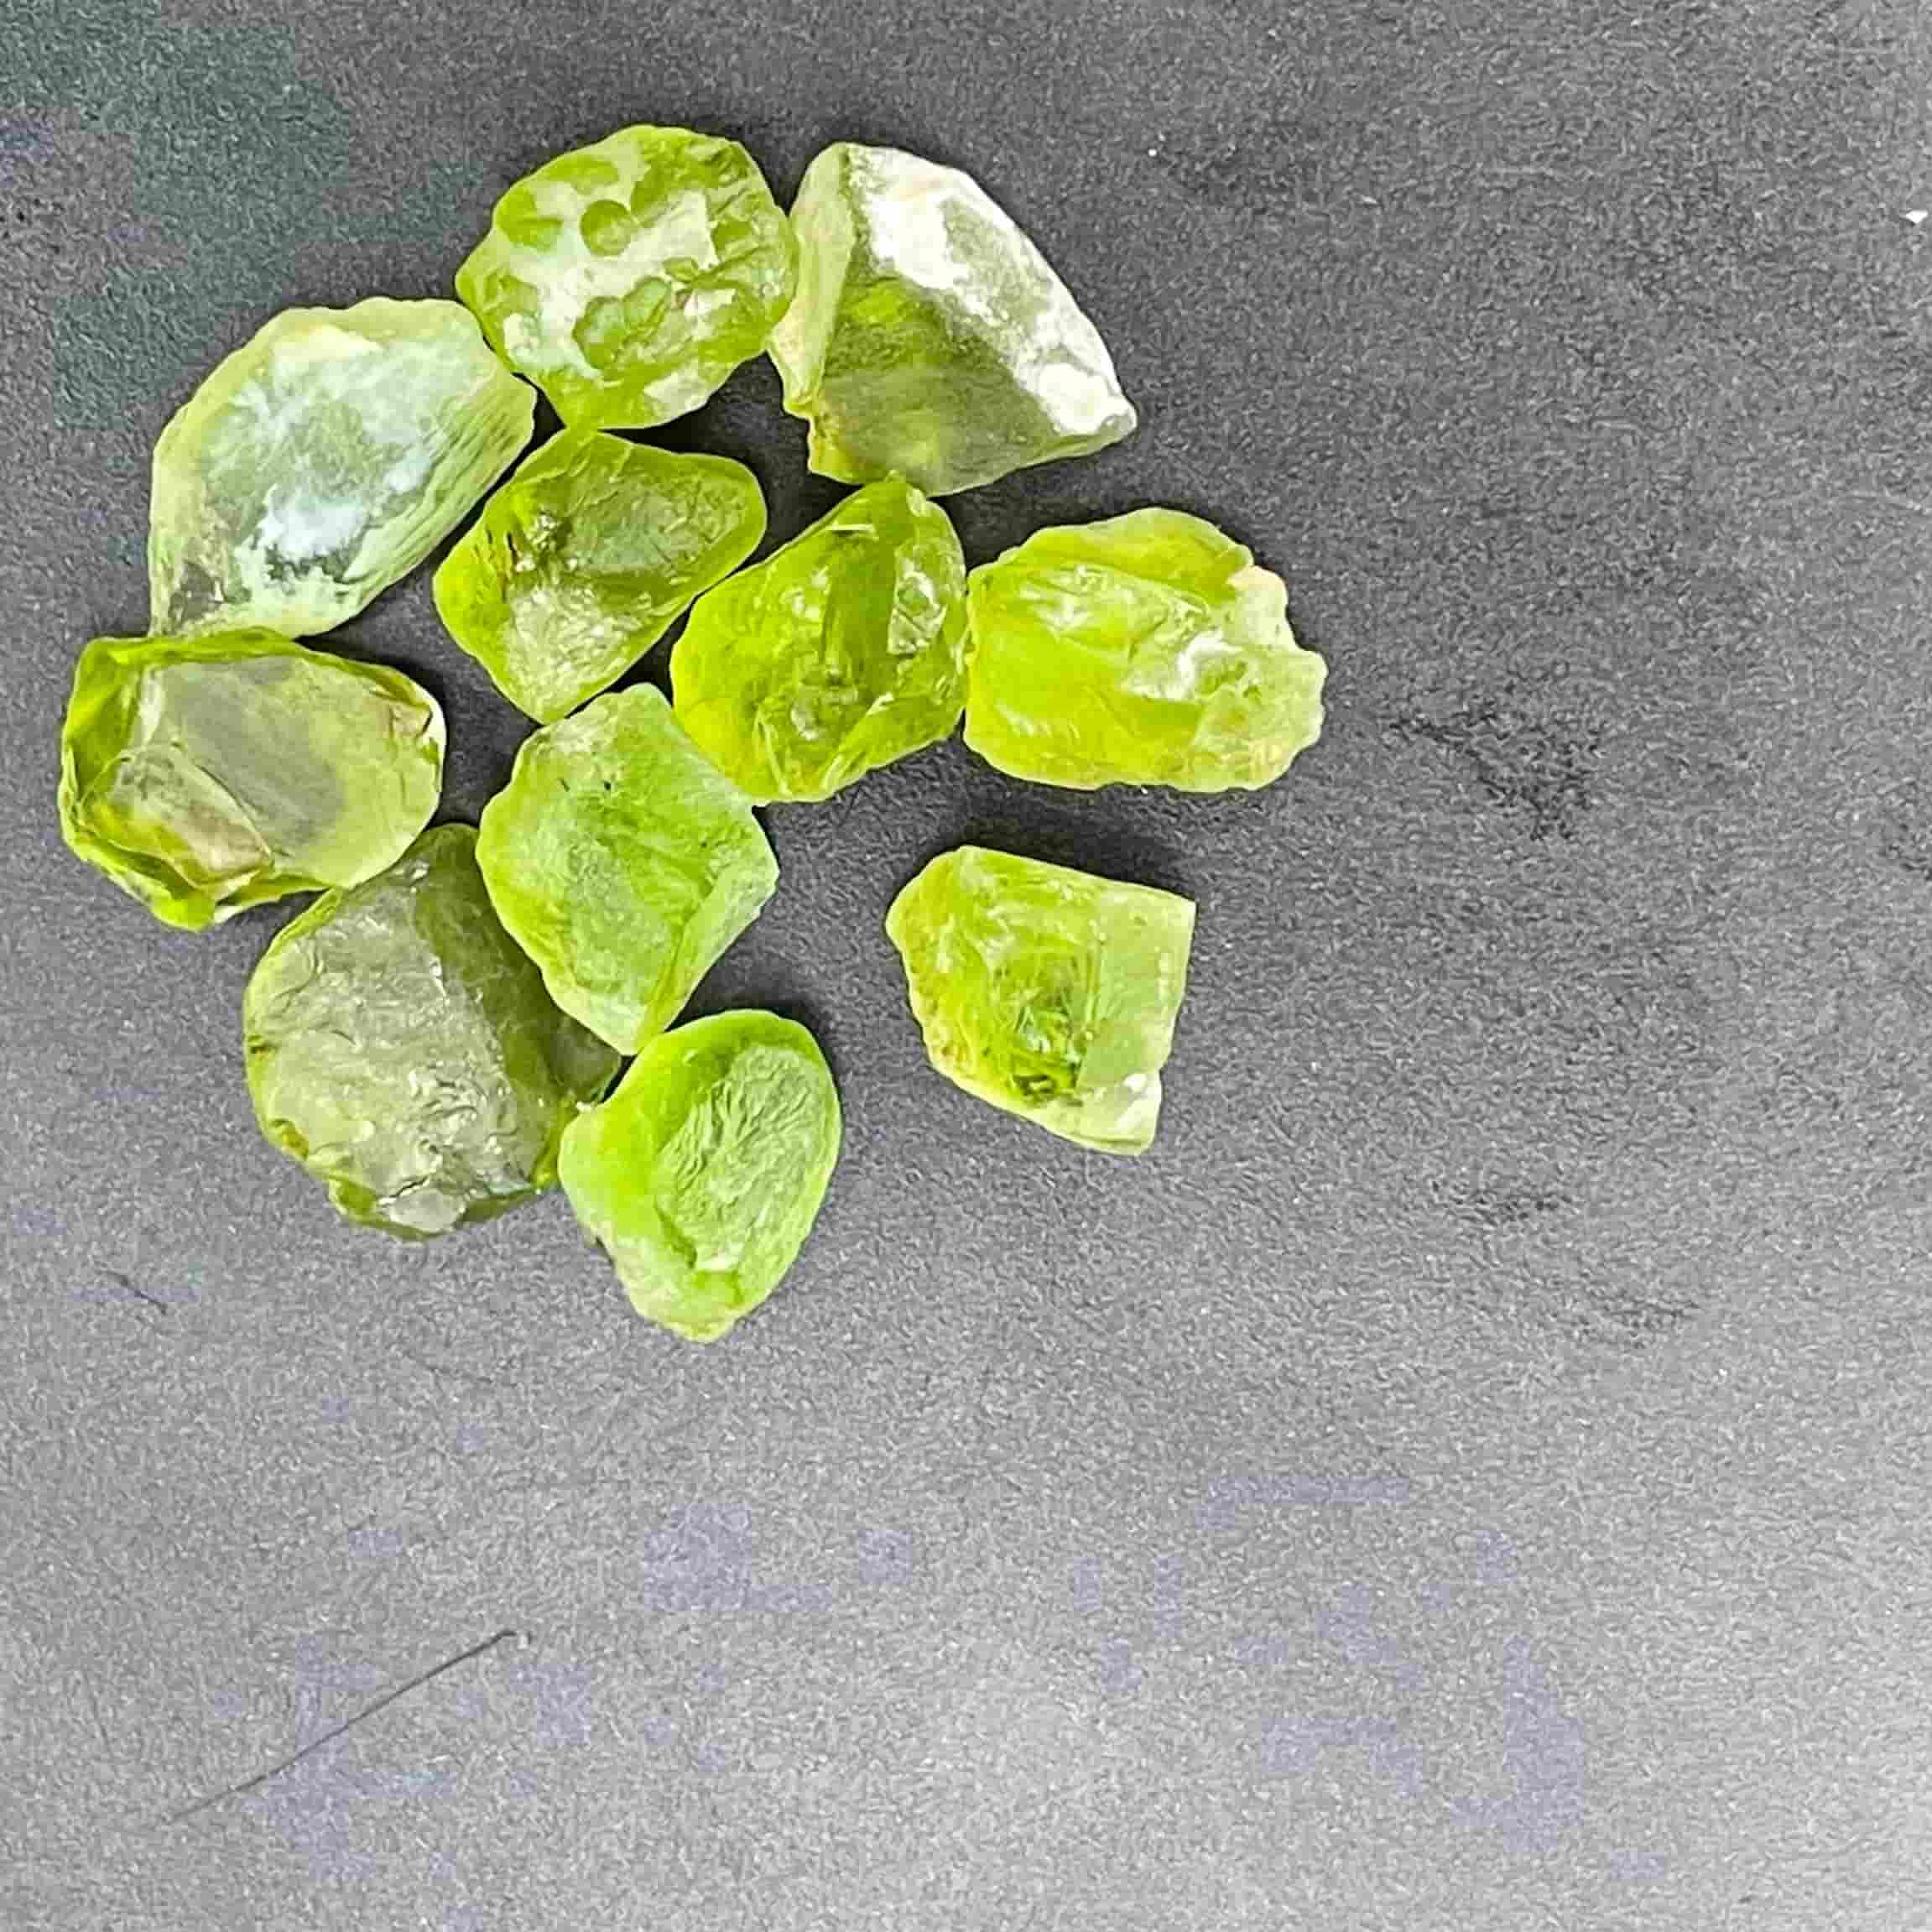 Rough Gemstones